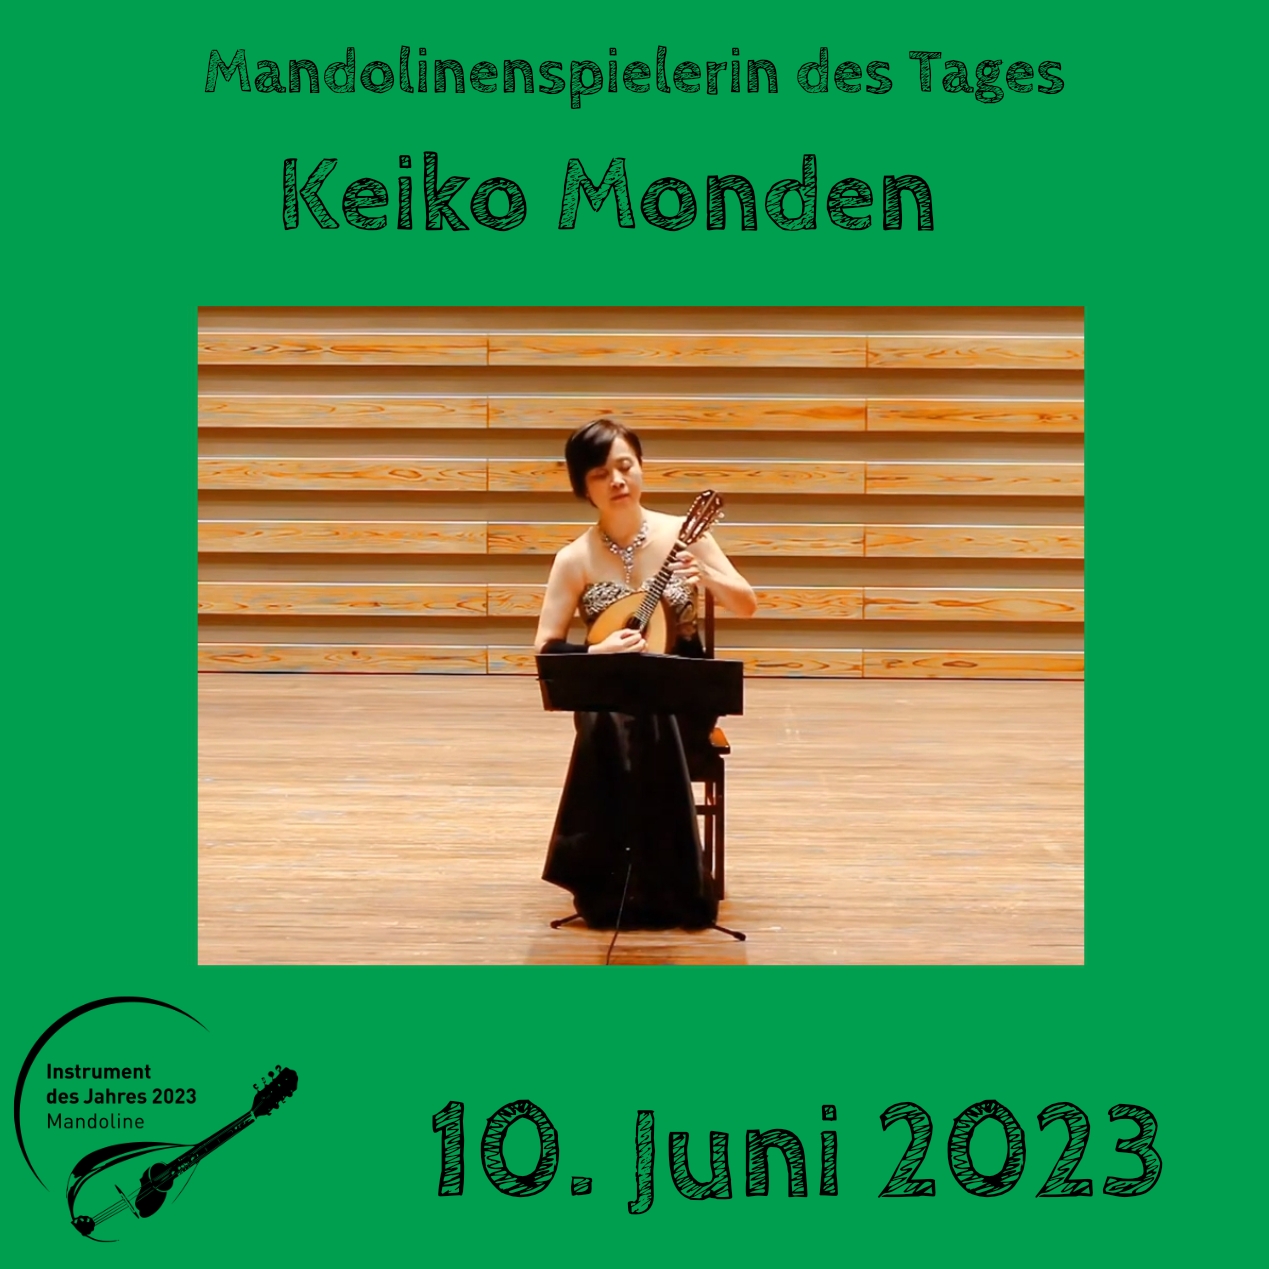 10. Juni - Keiko Monden Mandoline Instrument des Jahres 2023 Mandolinenspieler Mandolinenspielerin des Tages